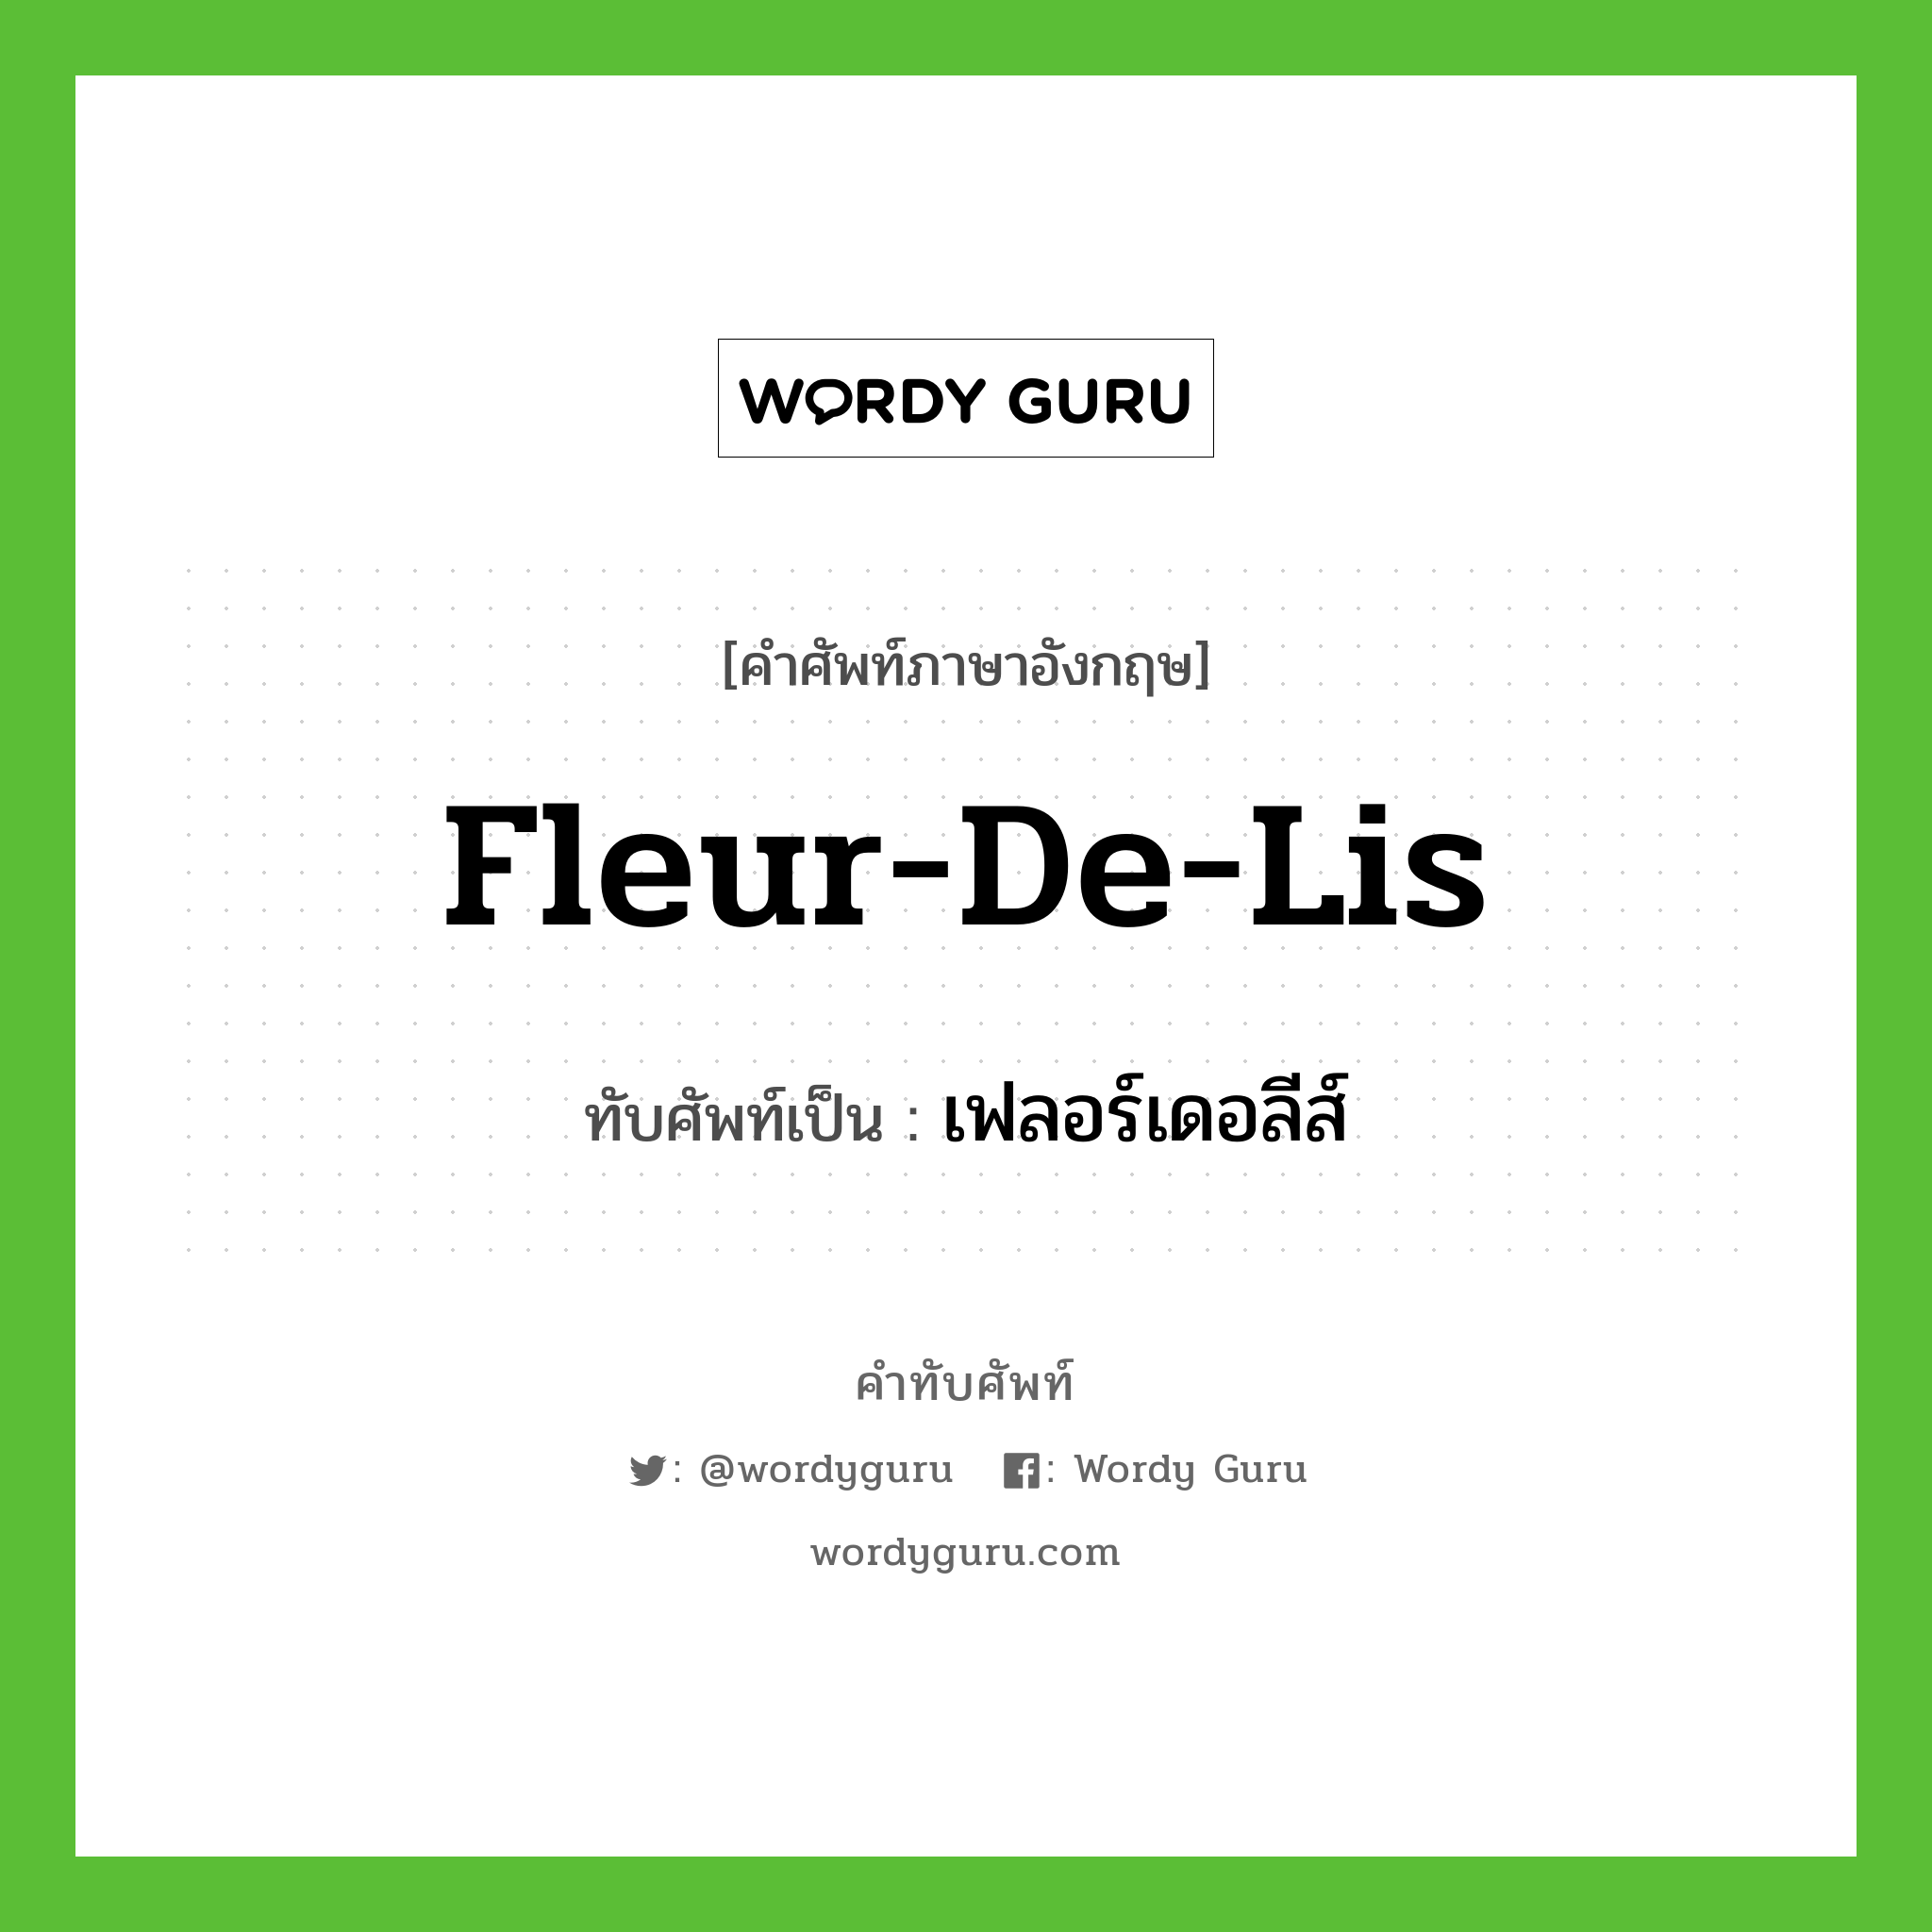 fleur-de-lis เขียนเป็นคำไทยว่าอะไร?, คำศัพท์ภาษาอังกฤษ fleur-de-lis ทับศัพท์เป็น เฟลอร์เดอลีส์